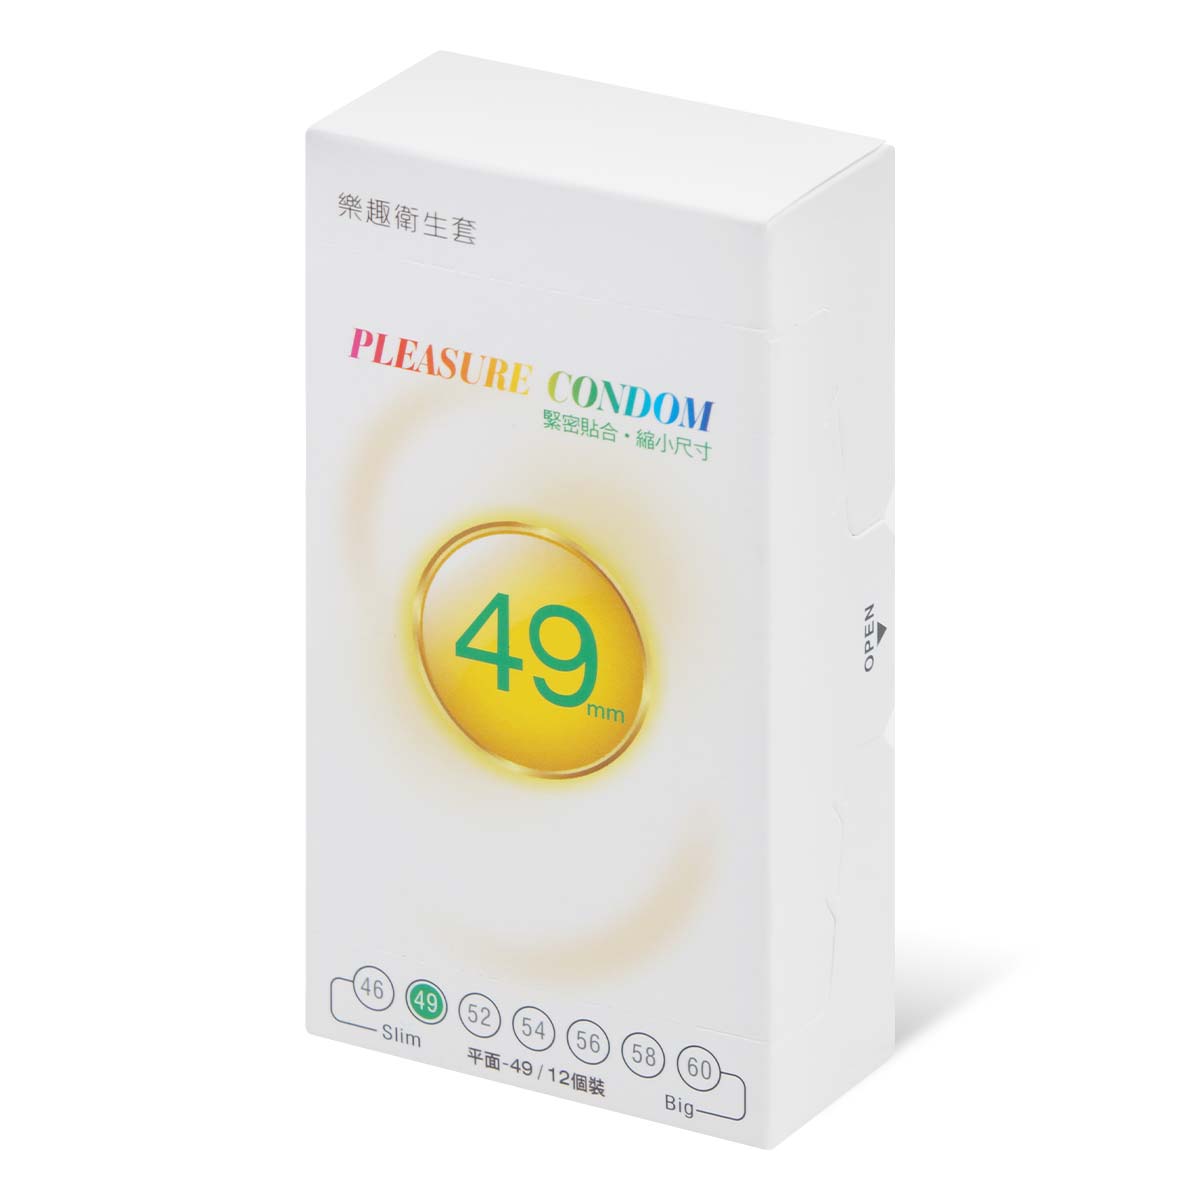 Pleasure Condom Slim 49mm 12's Pack Latex Condom-p_1